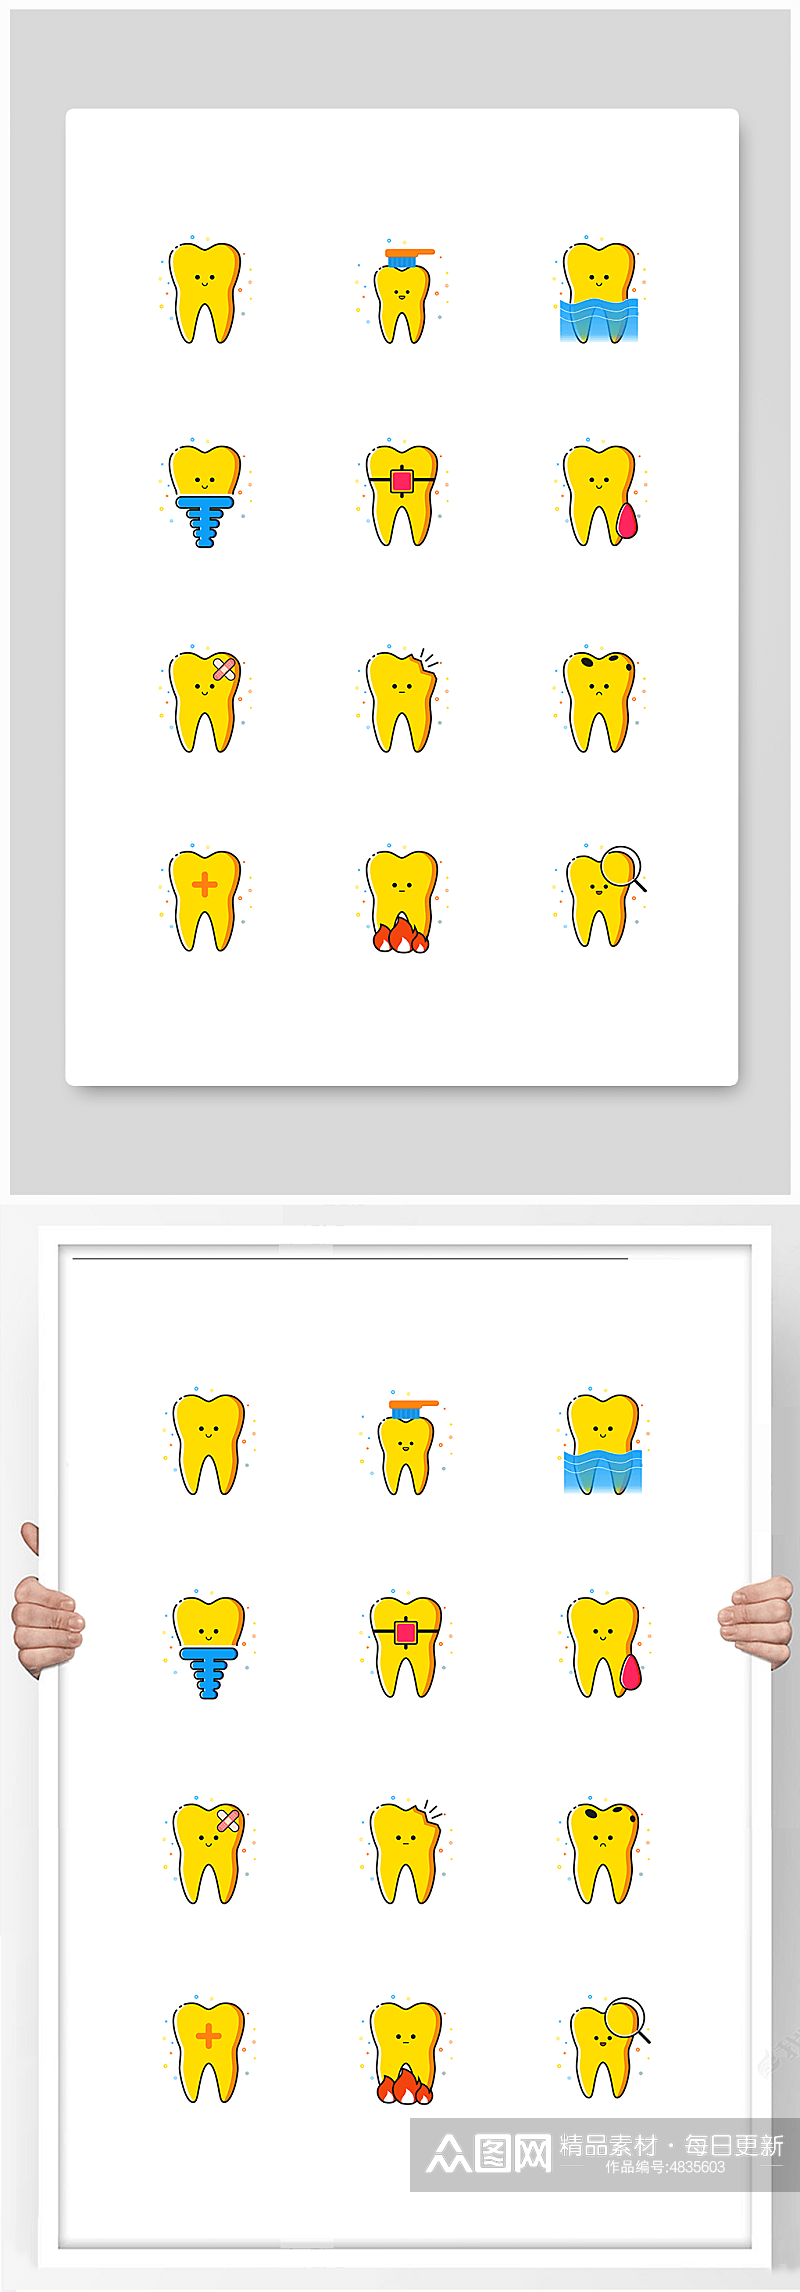 黄色可爱风格矢量牙科口腔医疗图标元素素材